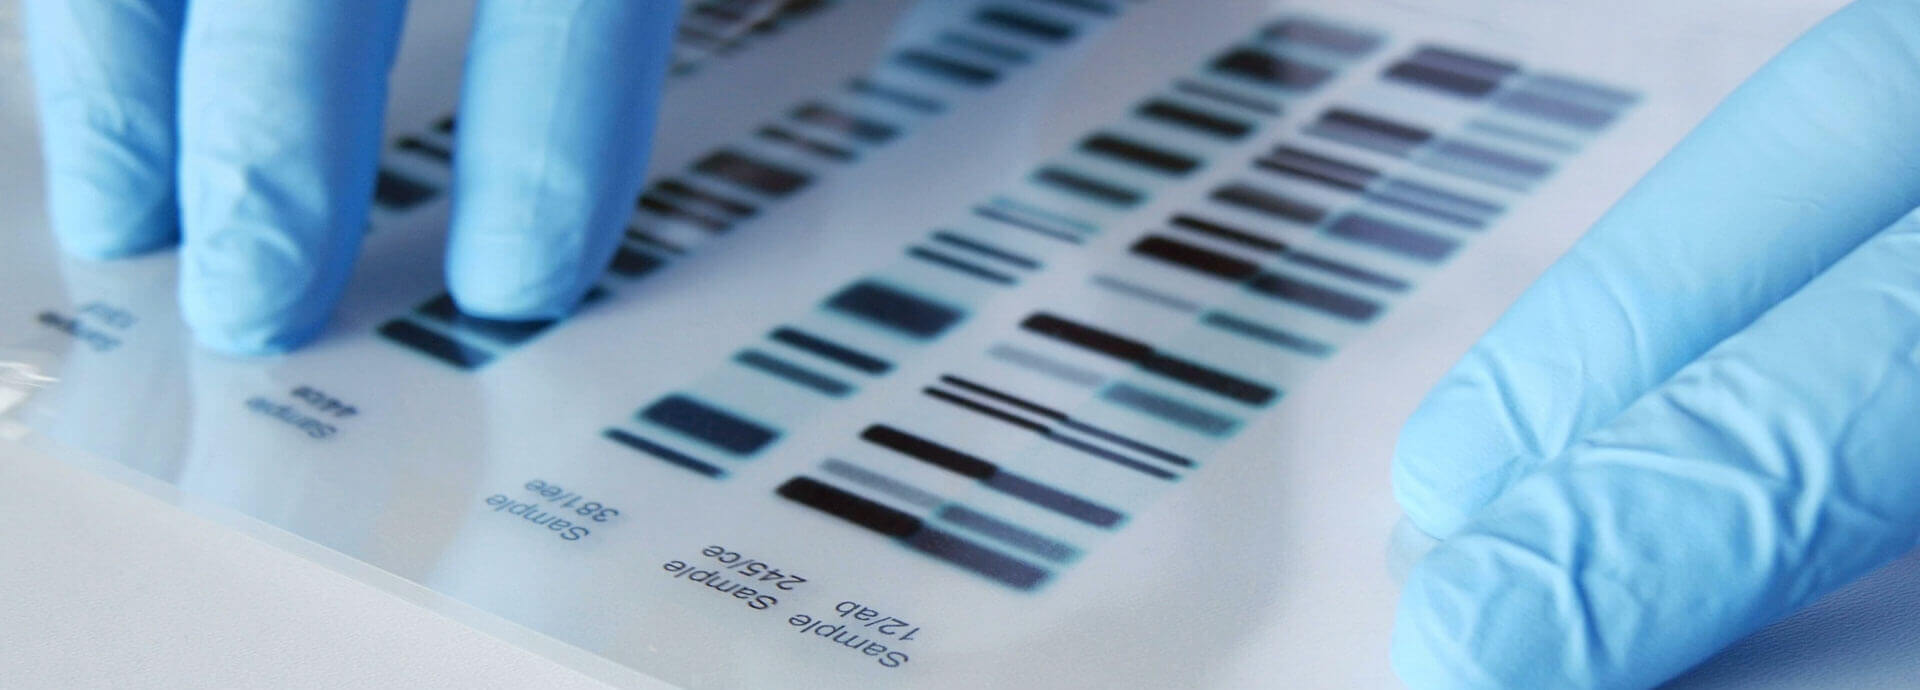 DNA Testing Leads #8 - damianmartinez.com